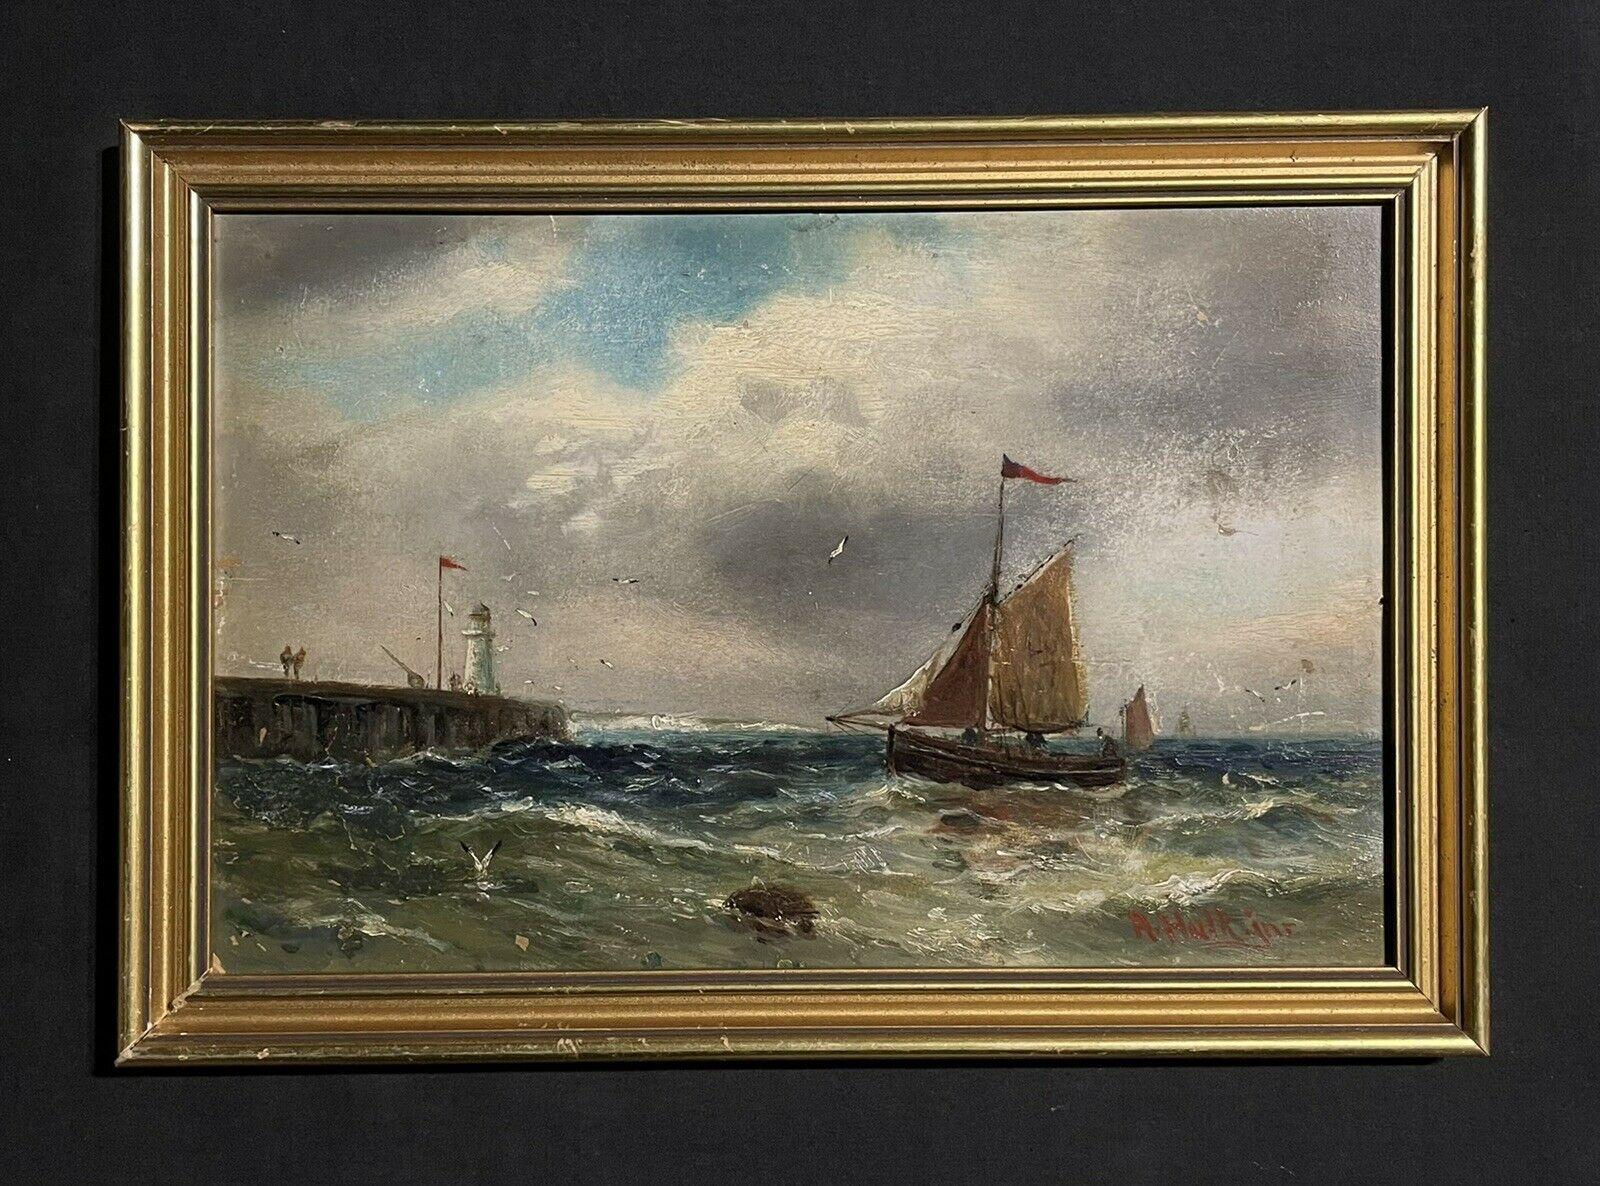 Peinture à l'huile de la marine britannique victorienne, bateau de pêche au large d'un joyau dans des eaux tempérées - Painting de Abraham Hulk jnr 1851 - 1922